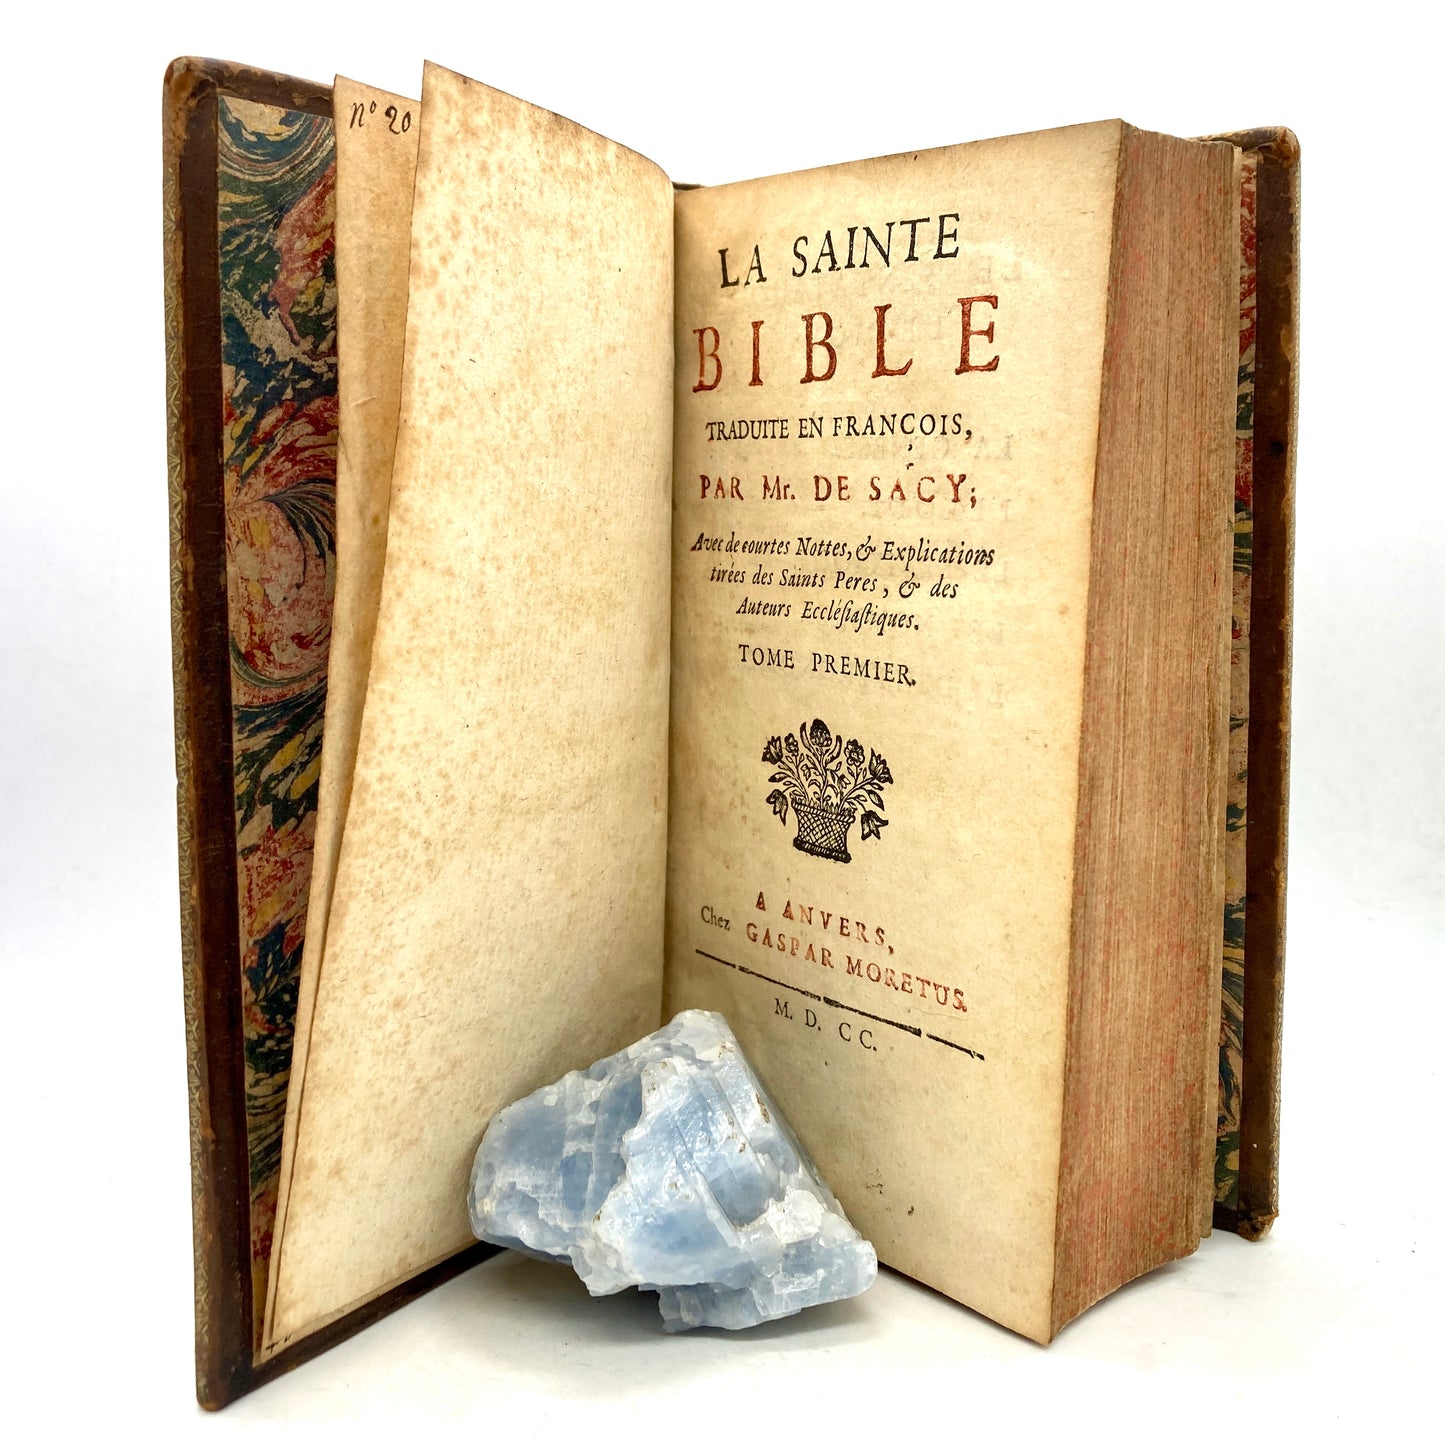 "La Sainte Bible" traduite en Francois par Me. De Sacy [Gaspar Moretus, 1700]